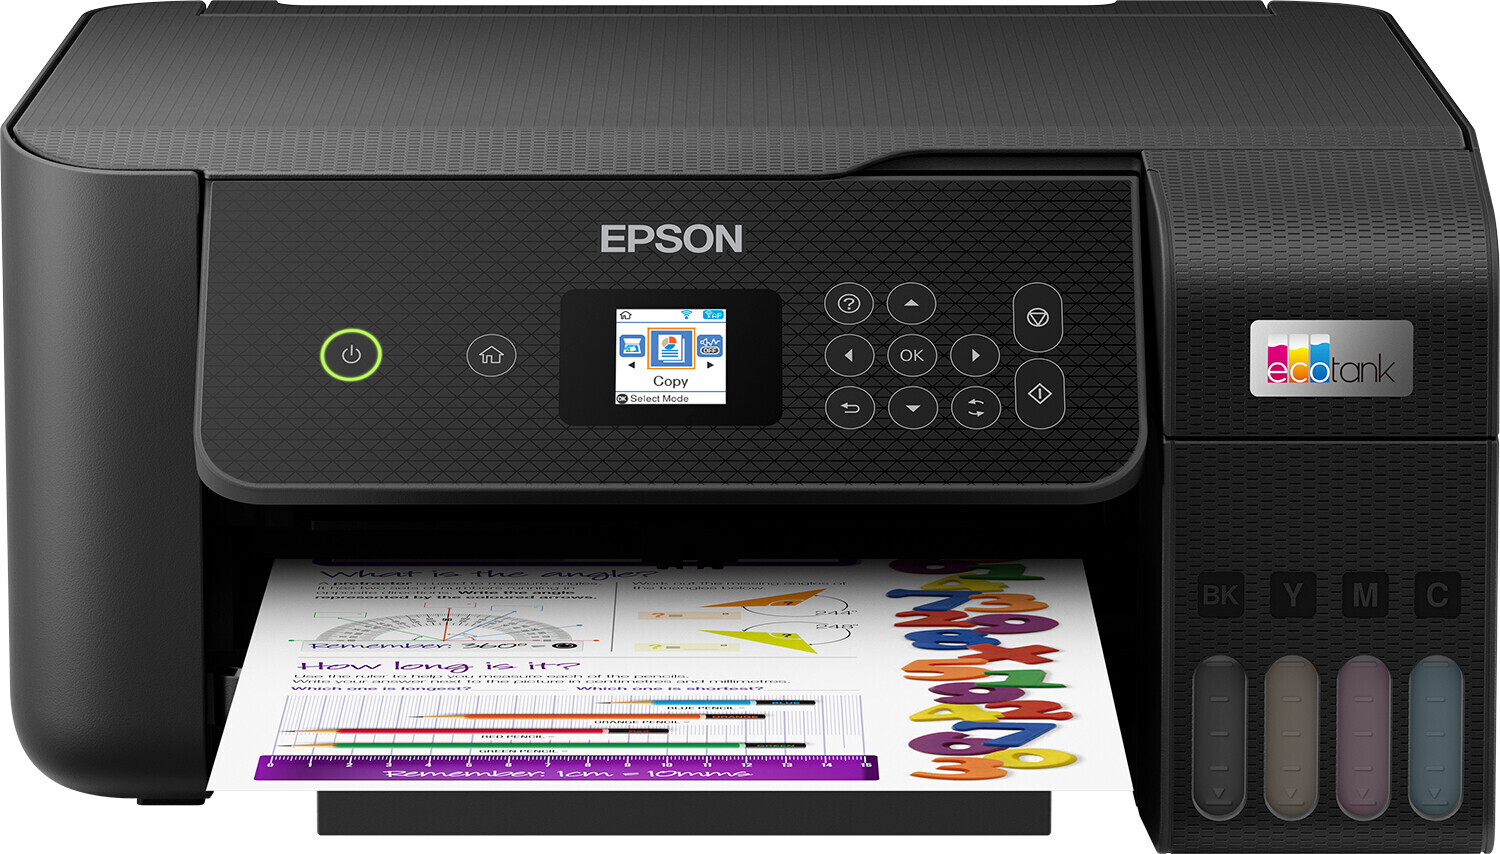 Epson EcoTank L3250 Imprimante multifonction rechargeable